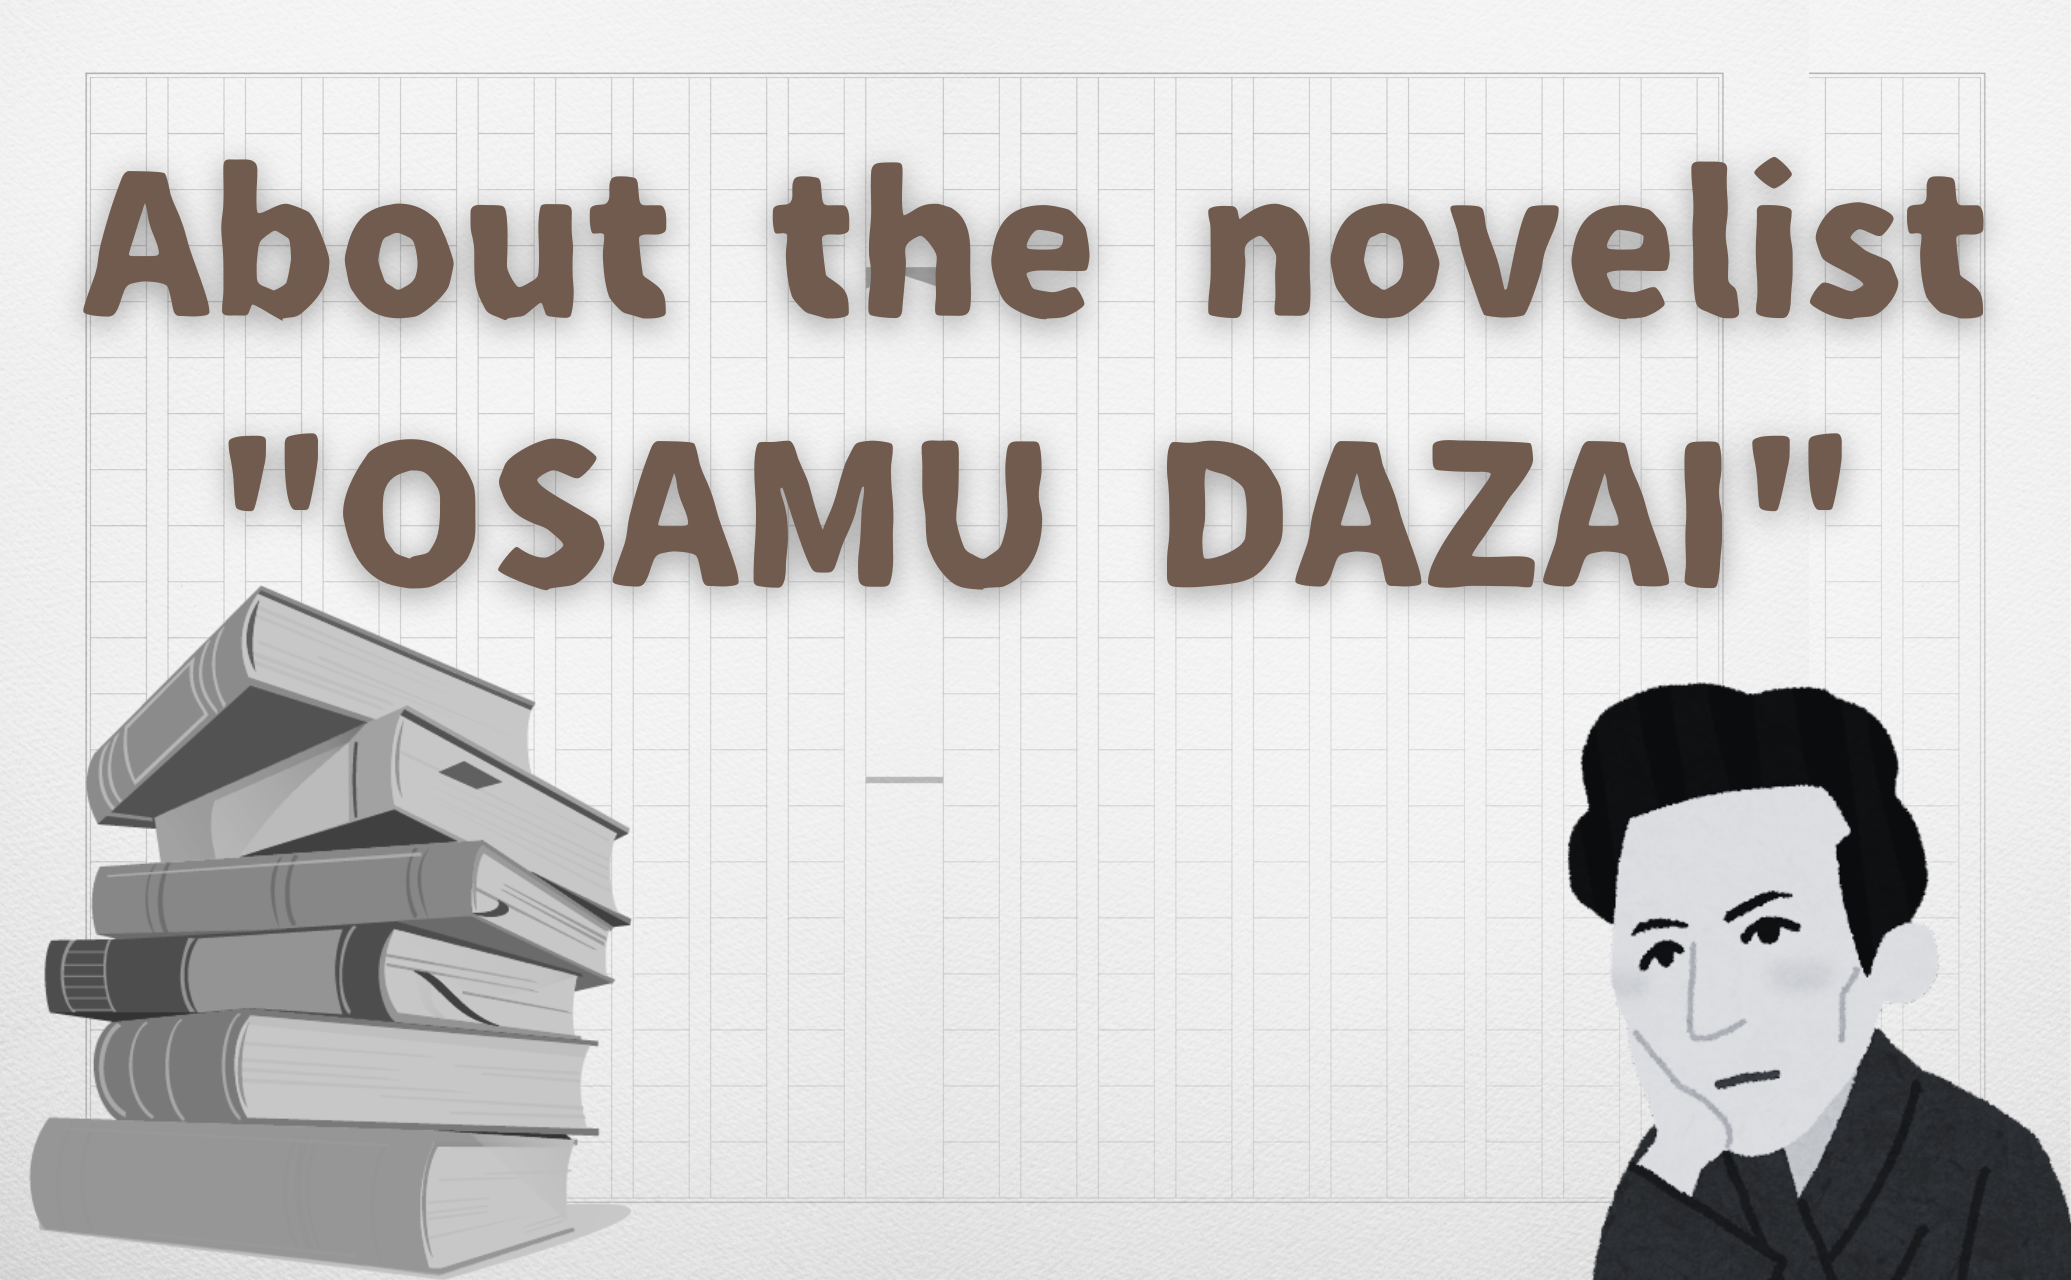 About the novelist Osamu Dazai